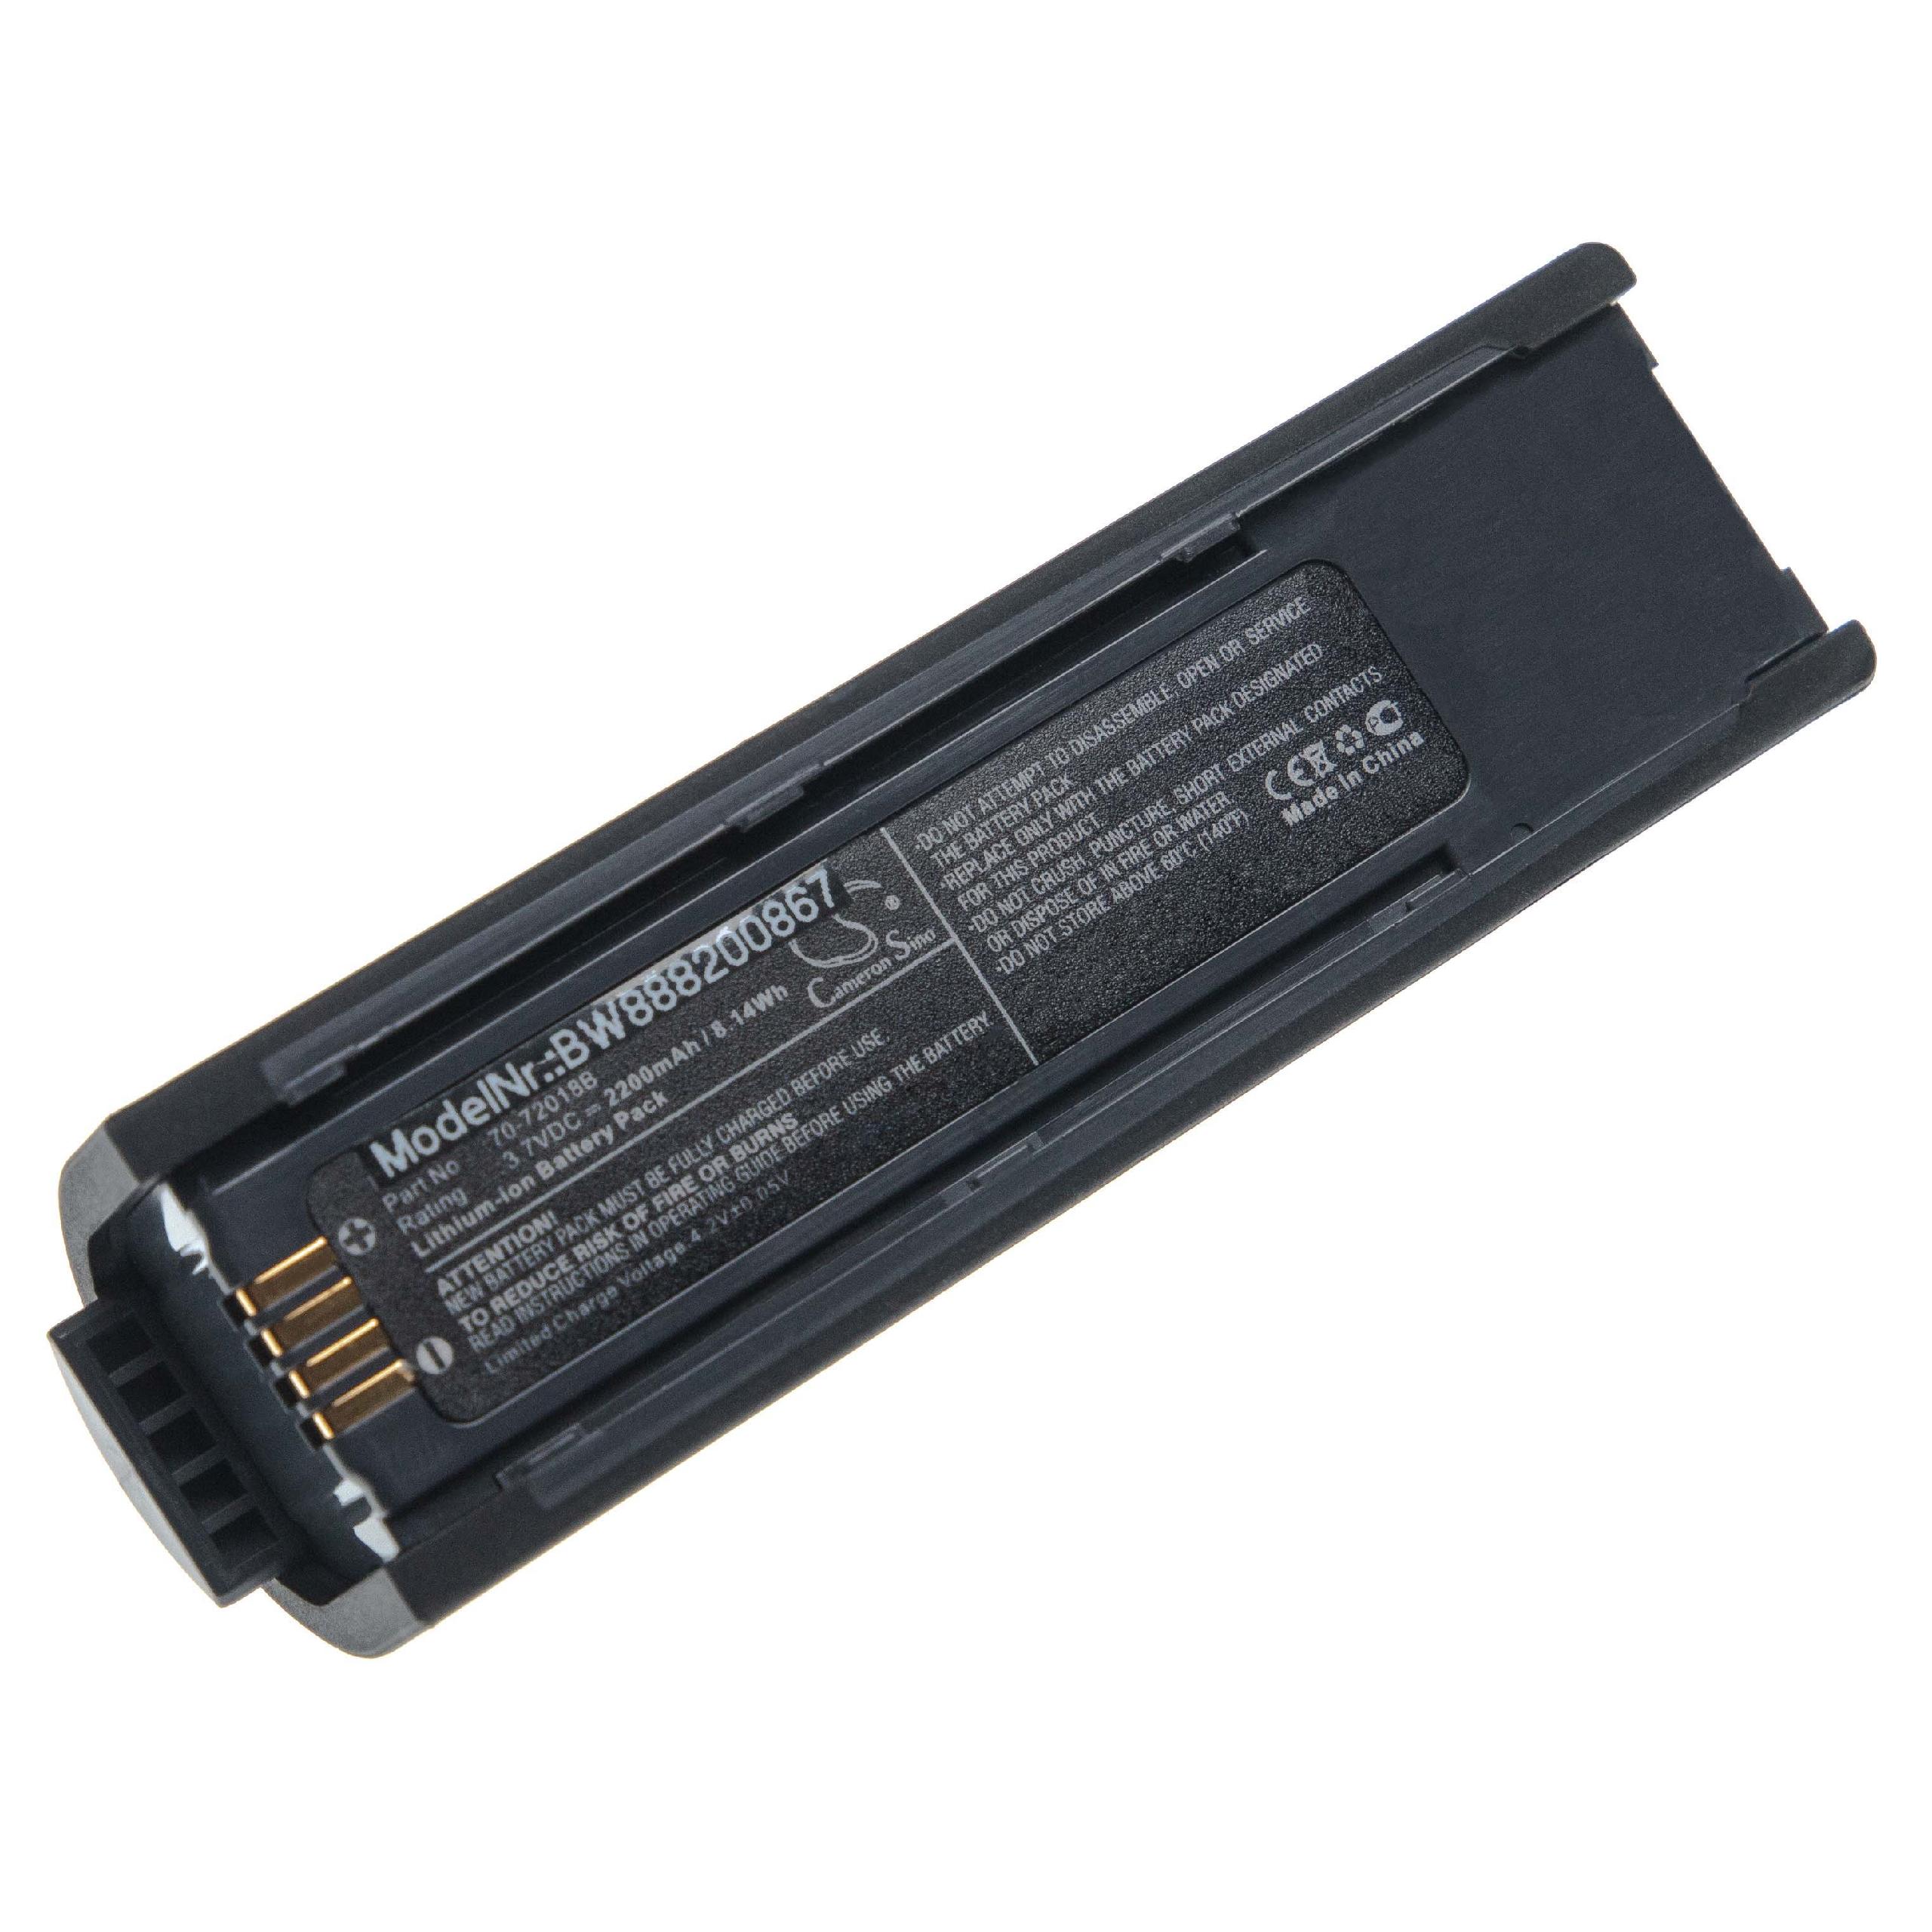 Batterie remplace Metrologic 46-00358, 70-72018B, 70-72018 pour scanner de code-barre - 2200mAh 3,7V Li-ion